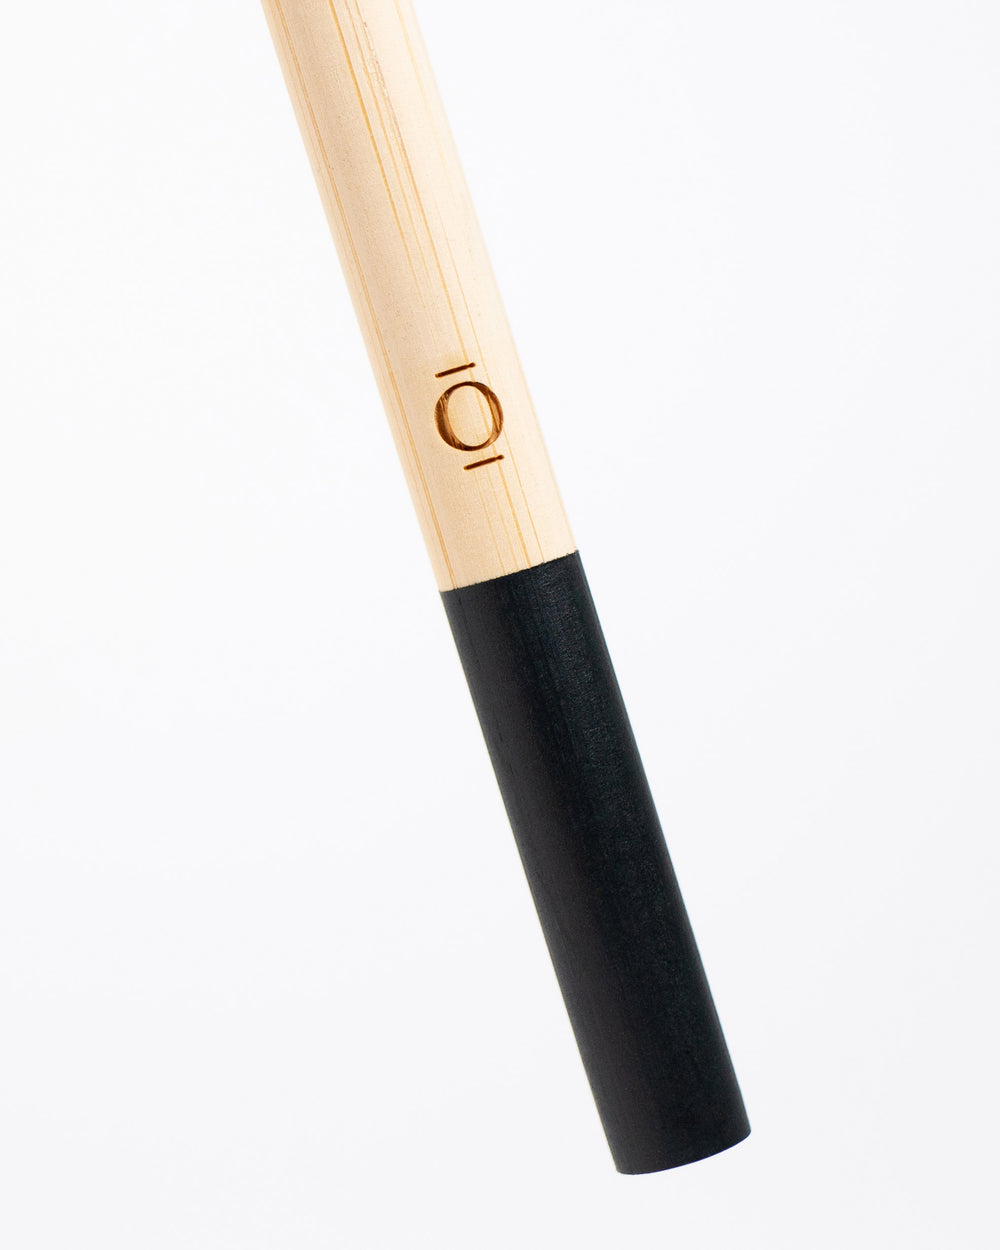 YOKU Onyx Bamboo Toothbrush